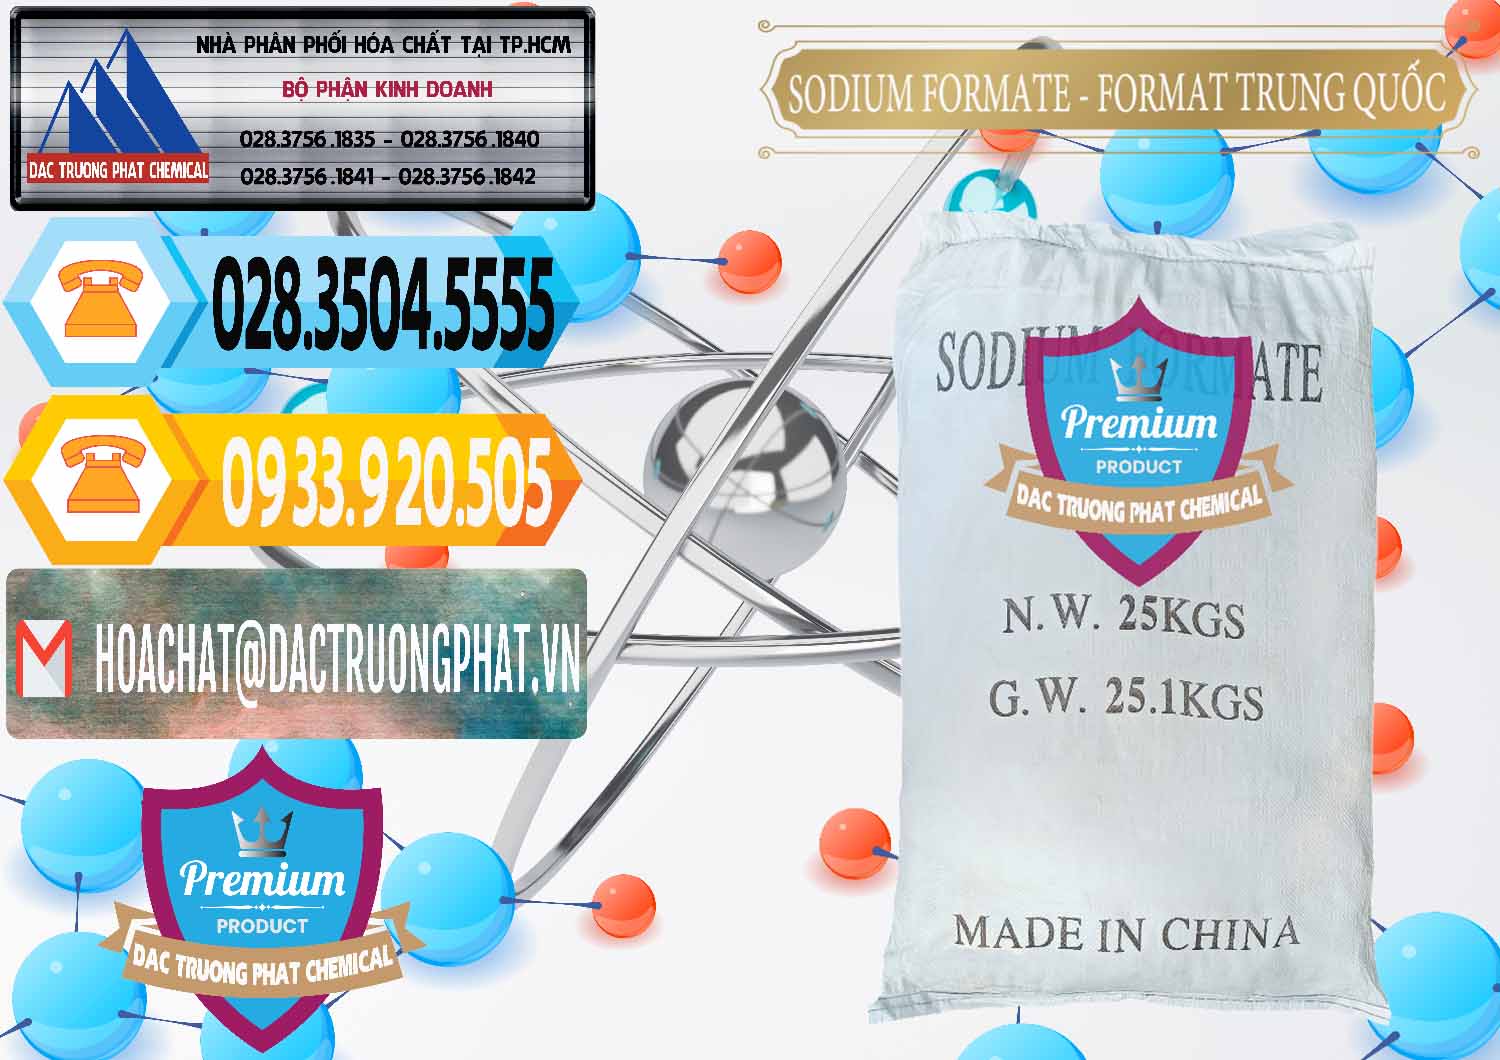 Đơn vị chuyên cung cấp _ bán Sodium Formate - Natri Format Trung Quốc China - 0142 - Công ty chuyên phân phối và nhập khẩu hóa chất tại TP.HCM - hoachattayrua.net